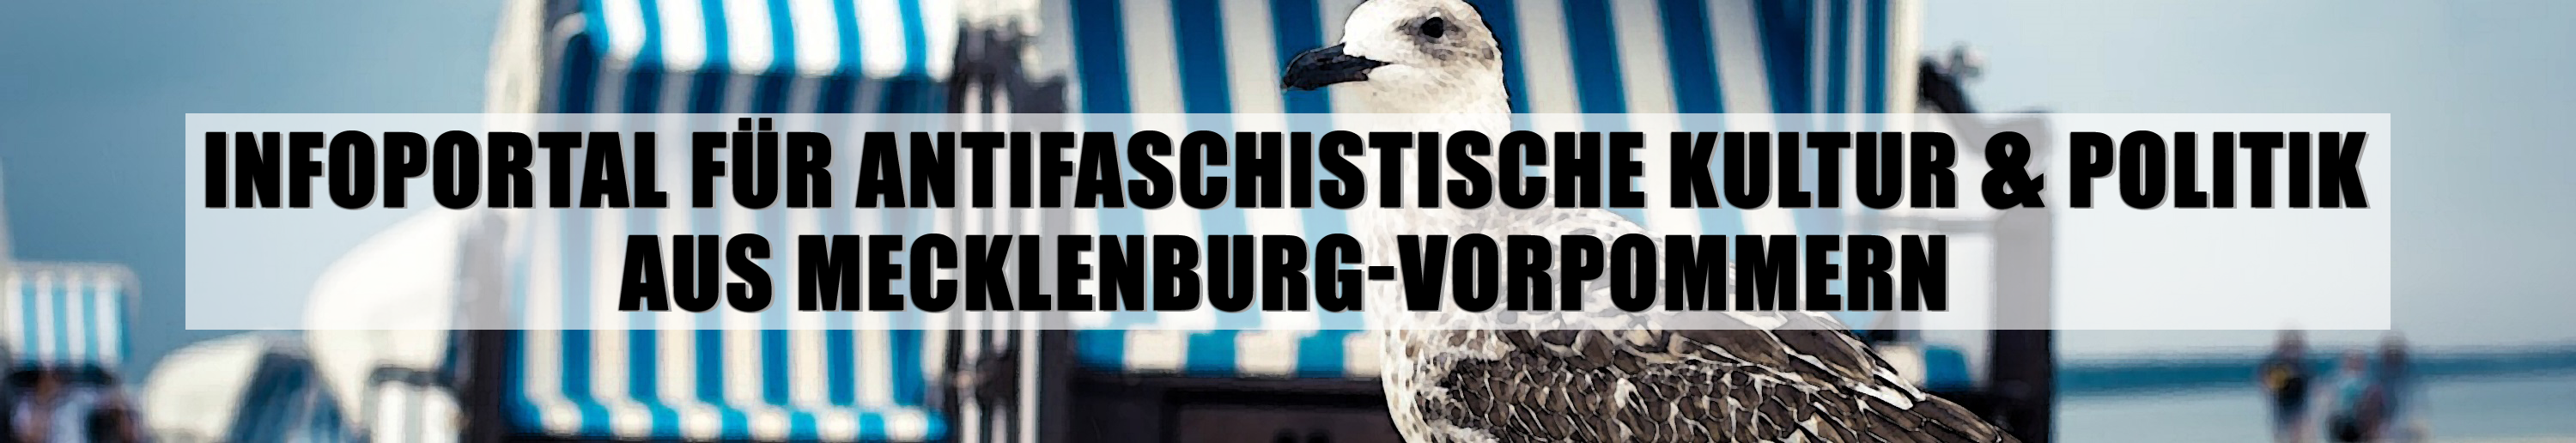 Infoportal für antifaschistische Kultur und Politik aus Mecklenburg-Vorpommern